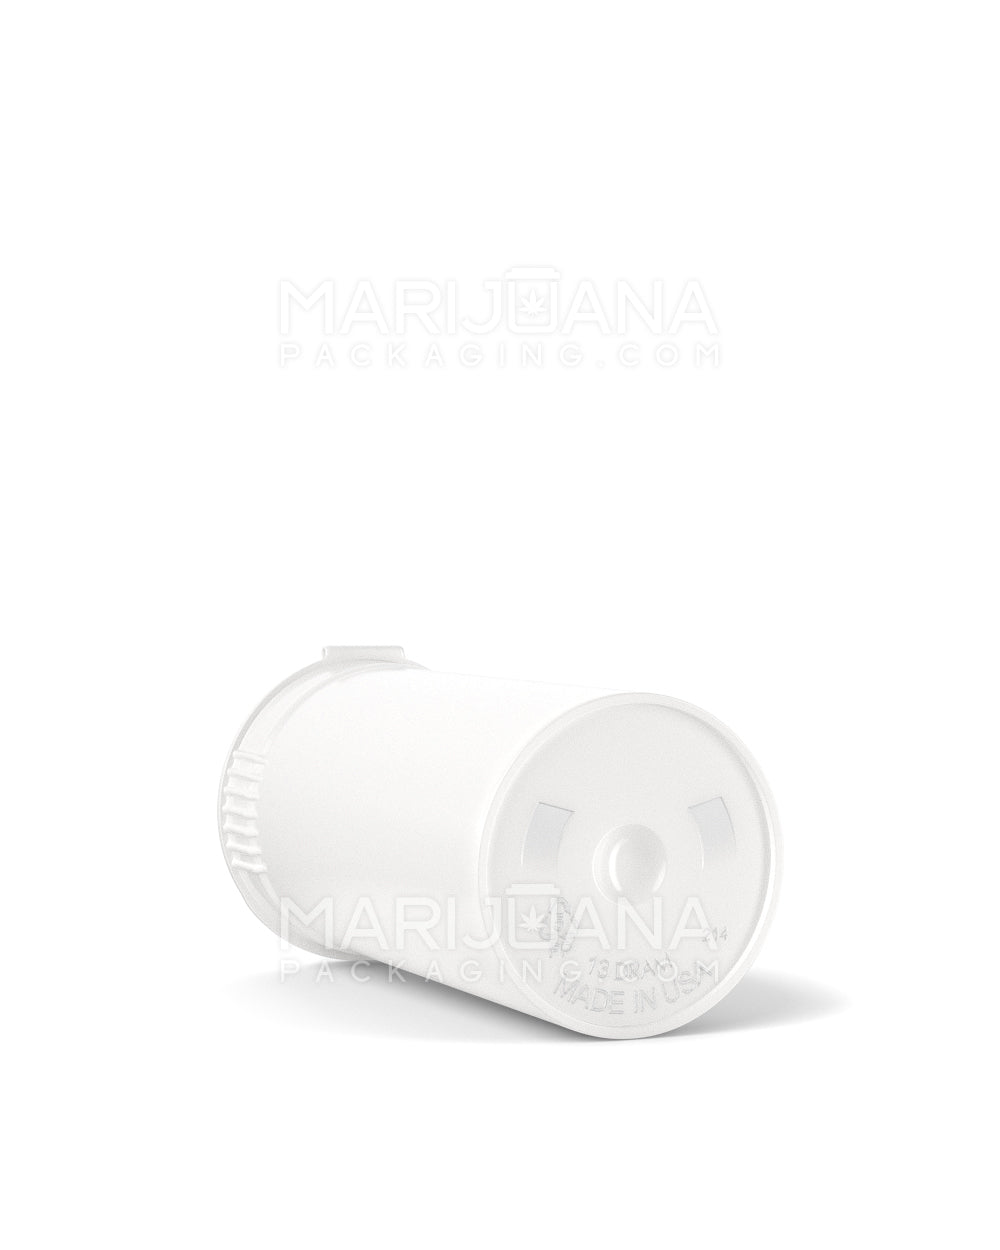 POLLEN GEAR | Child Resistant KSC Opaque White Pop Top Bottles | 13dr - 2g - 592 Count - 4